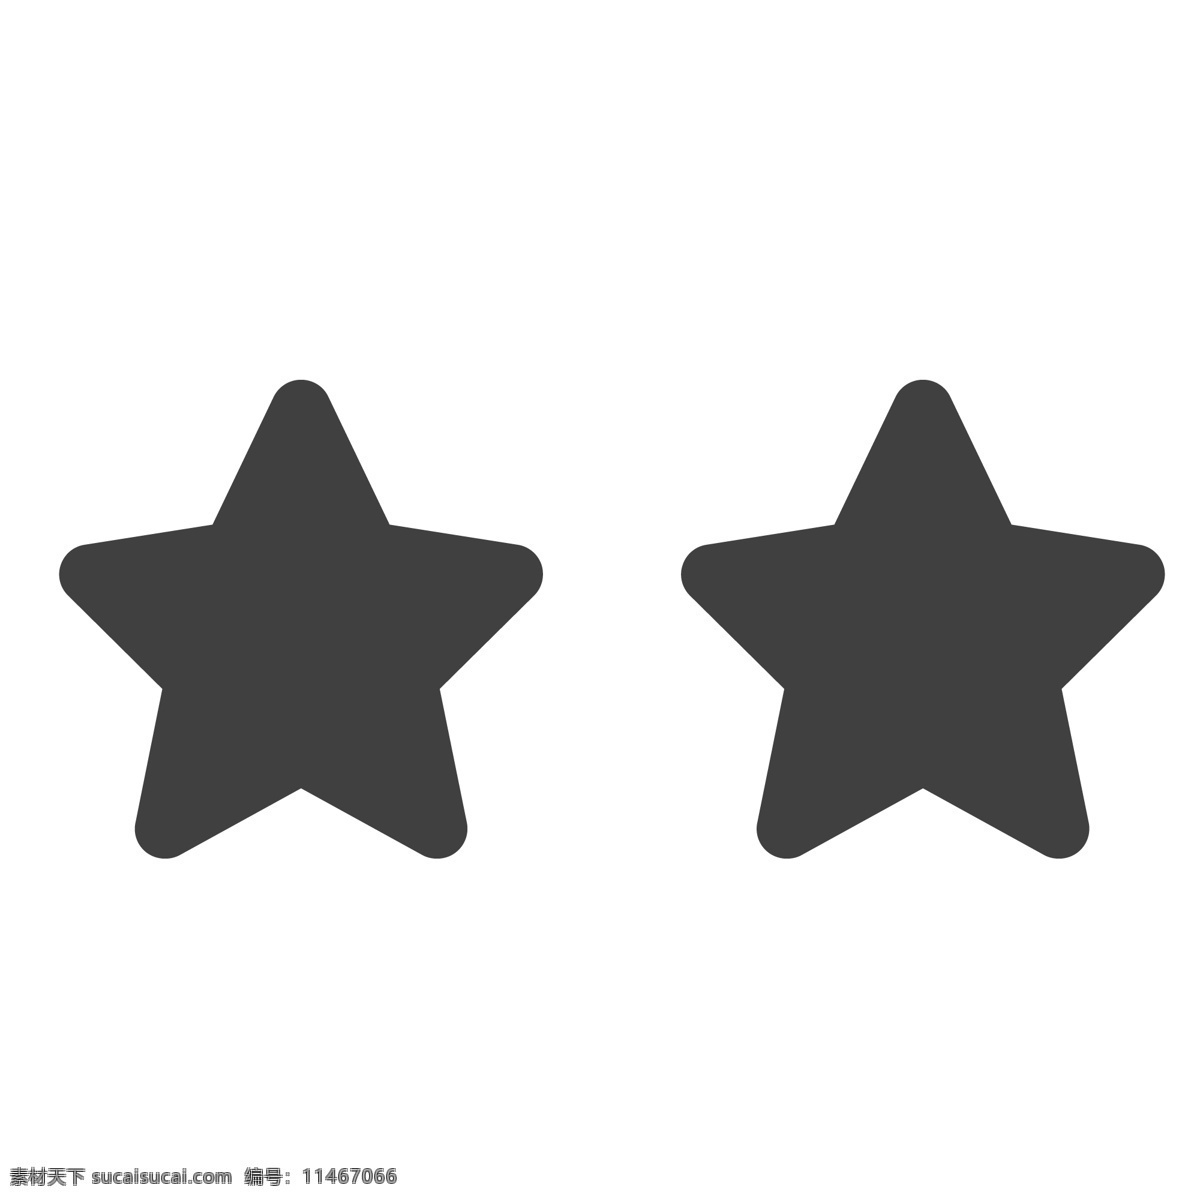 两个卡通星星 星星 五角星 形状 生活图标 卡通图标 黑色的图标 手机图标 智能图标设计